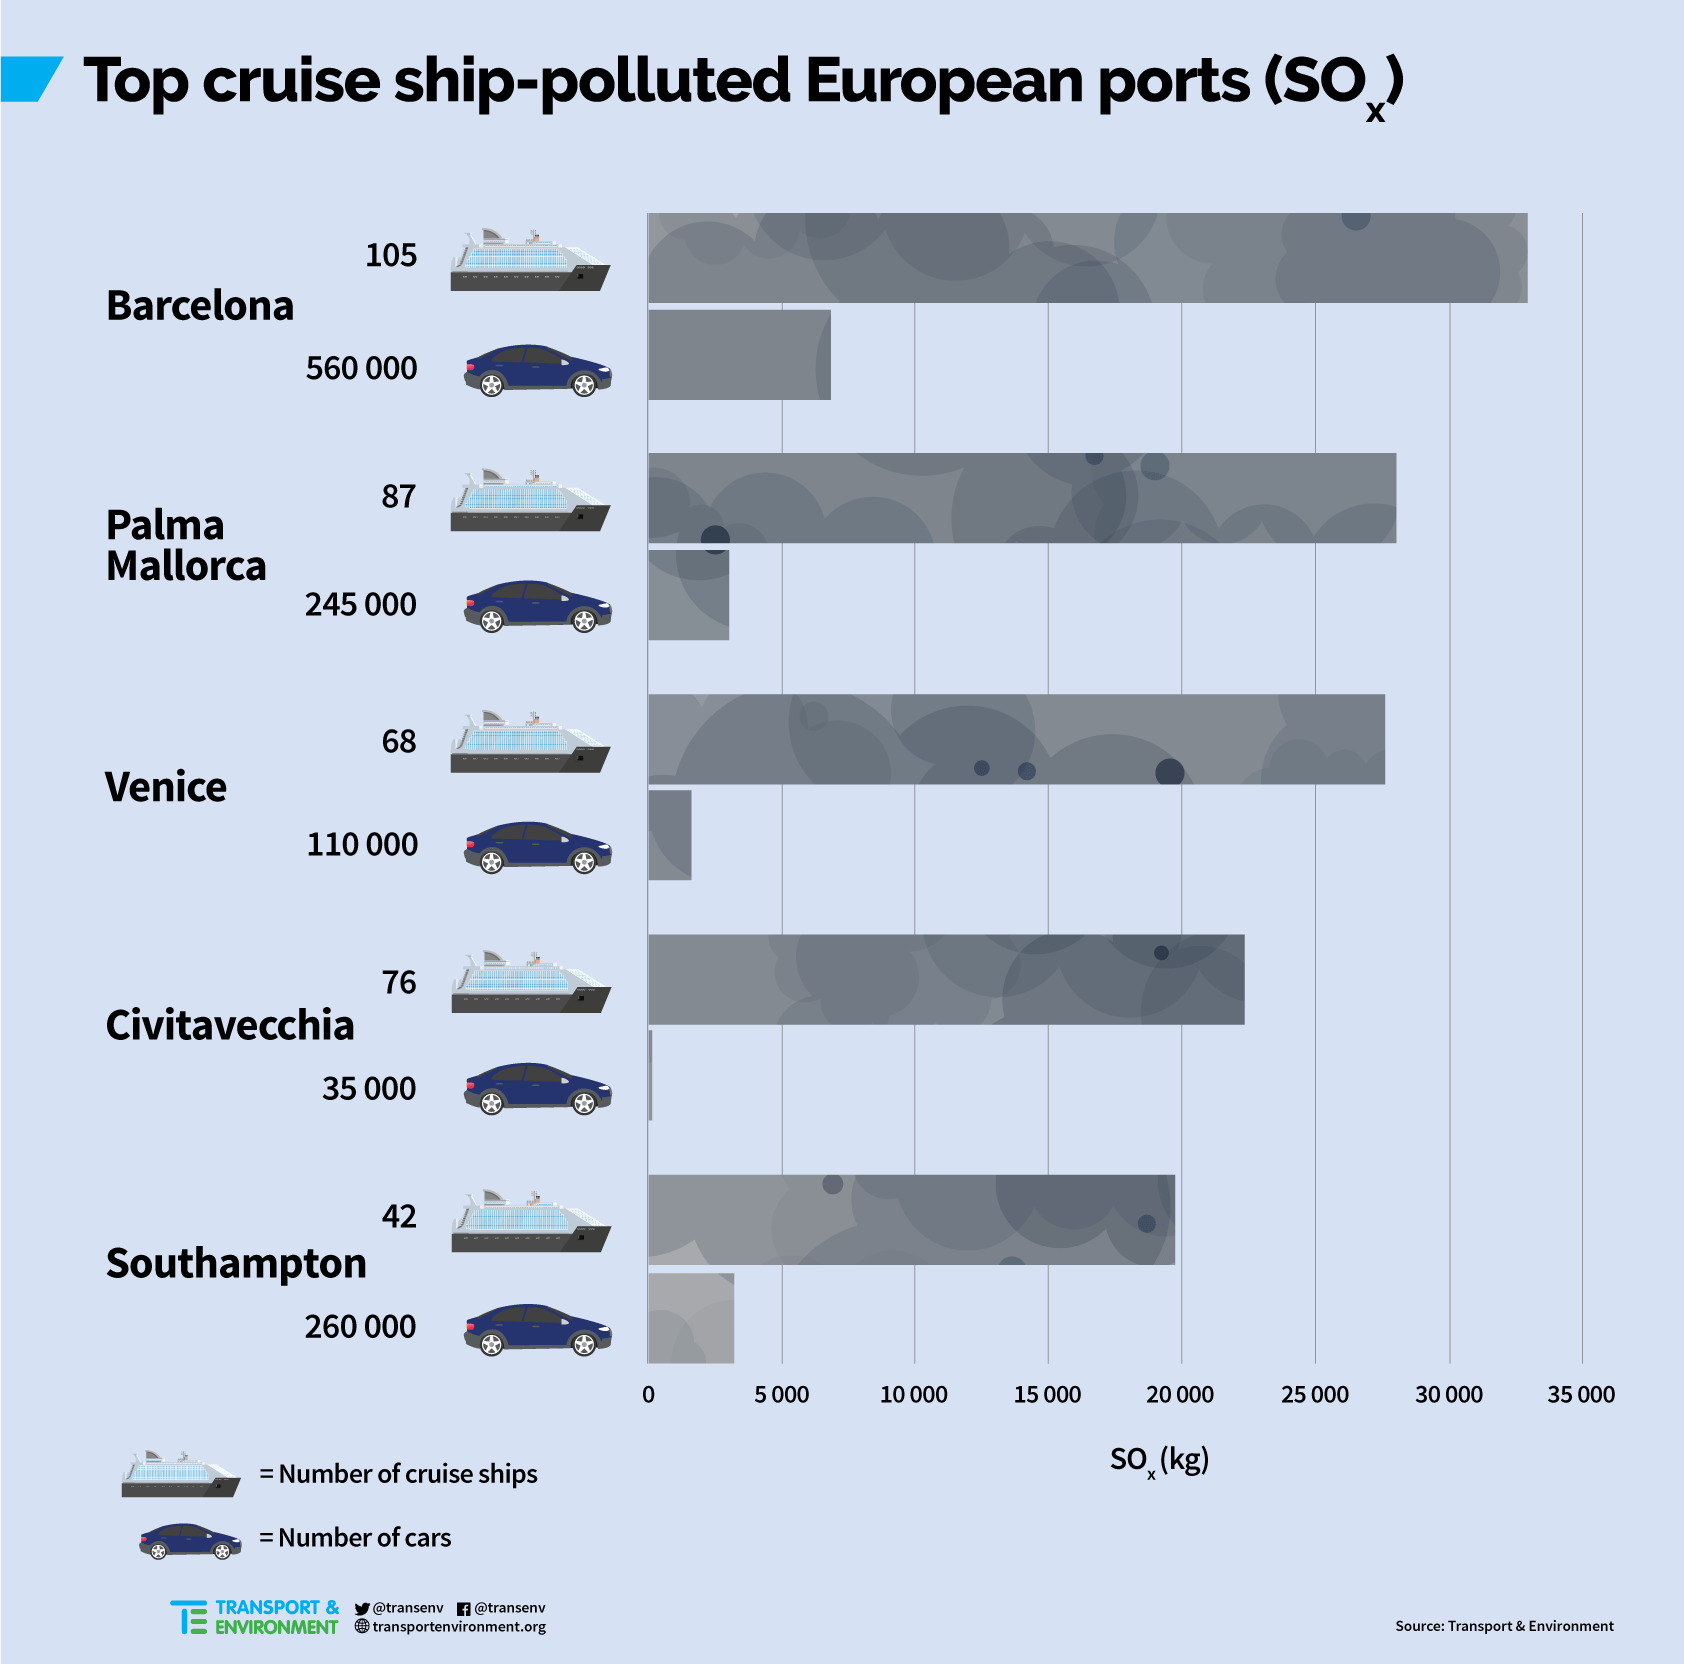 Норвегия, наряду с Испанией и Италией, оказалась наиболее пострадавшей от  загрязнений воздуха серой и оксидами азота, которое вызвано круизными лайнерами